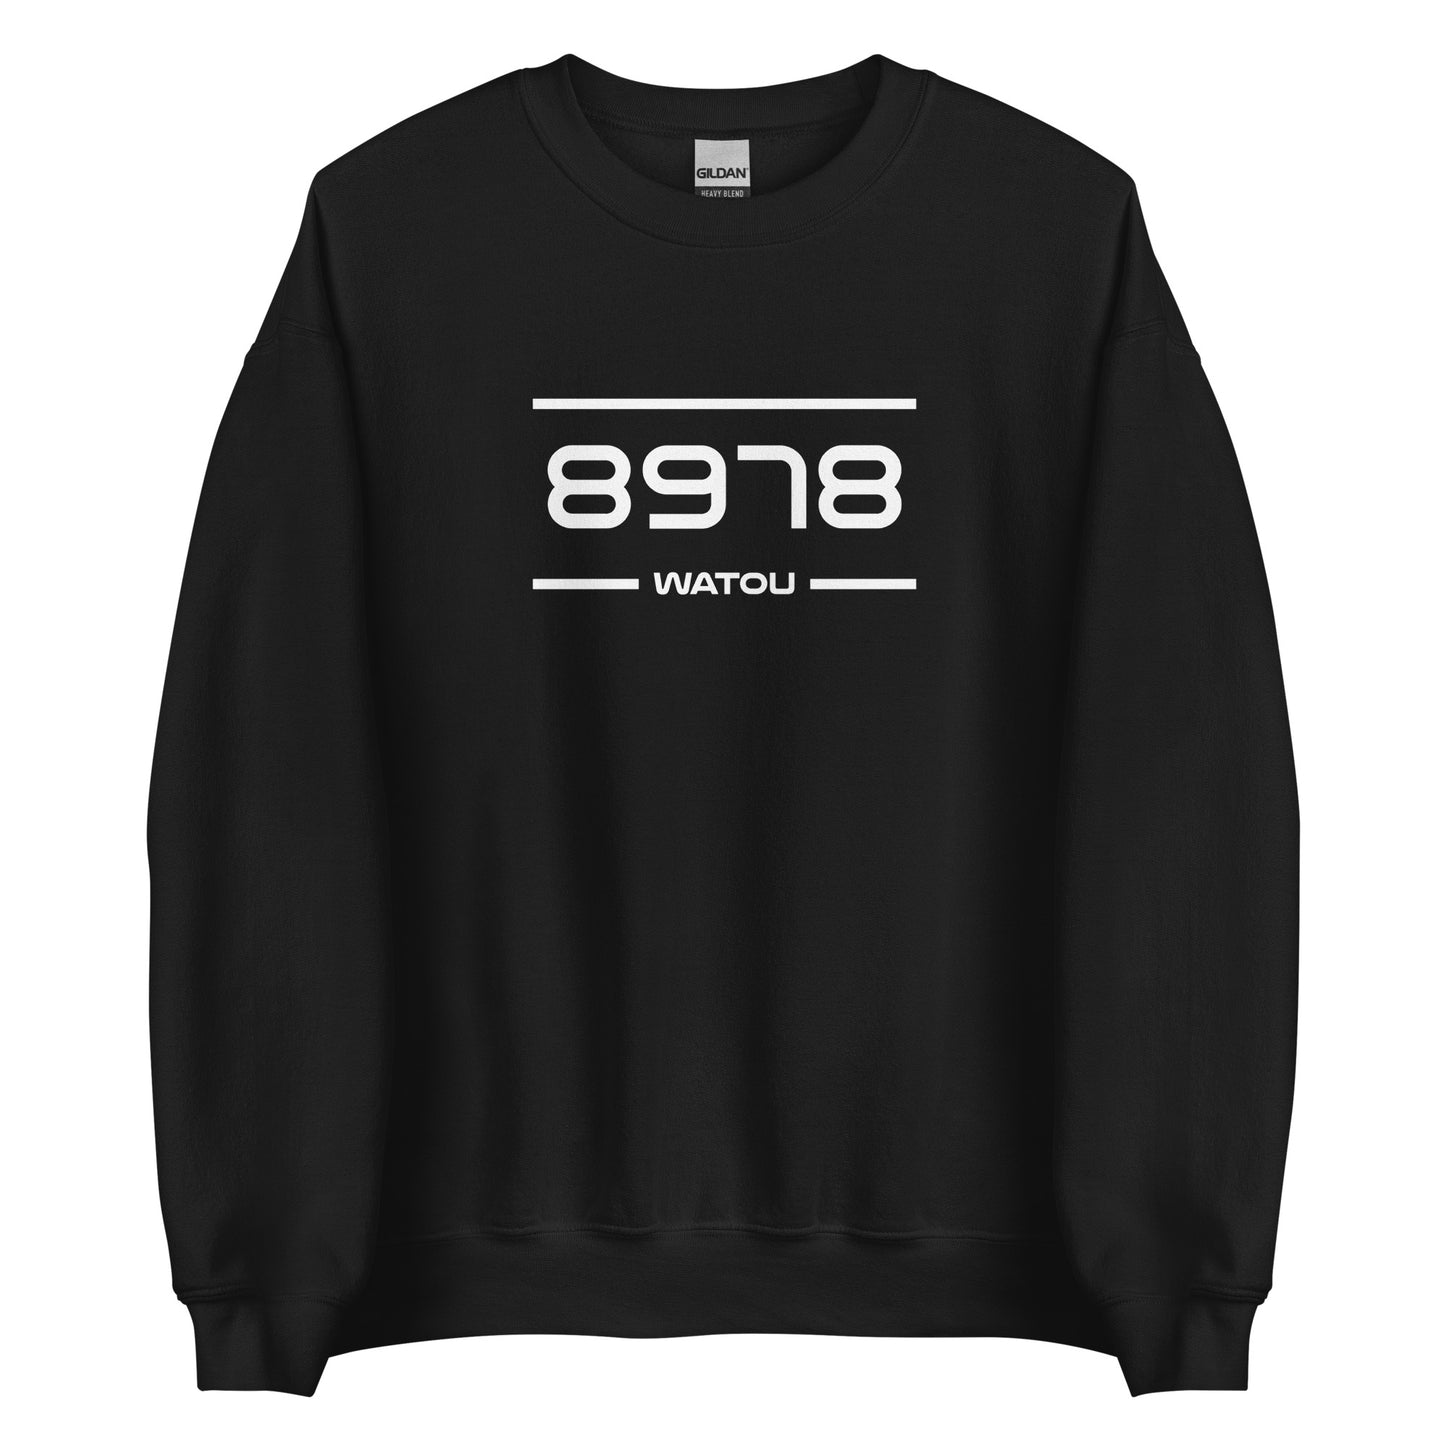 Sweater - 8978 - Watou (M/V)